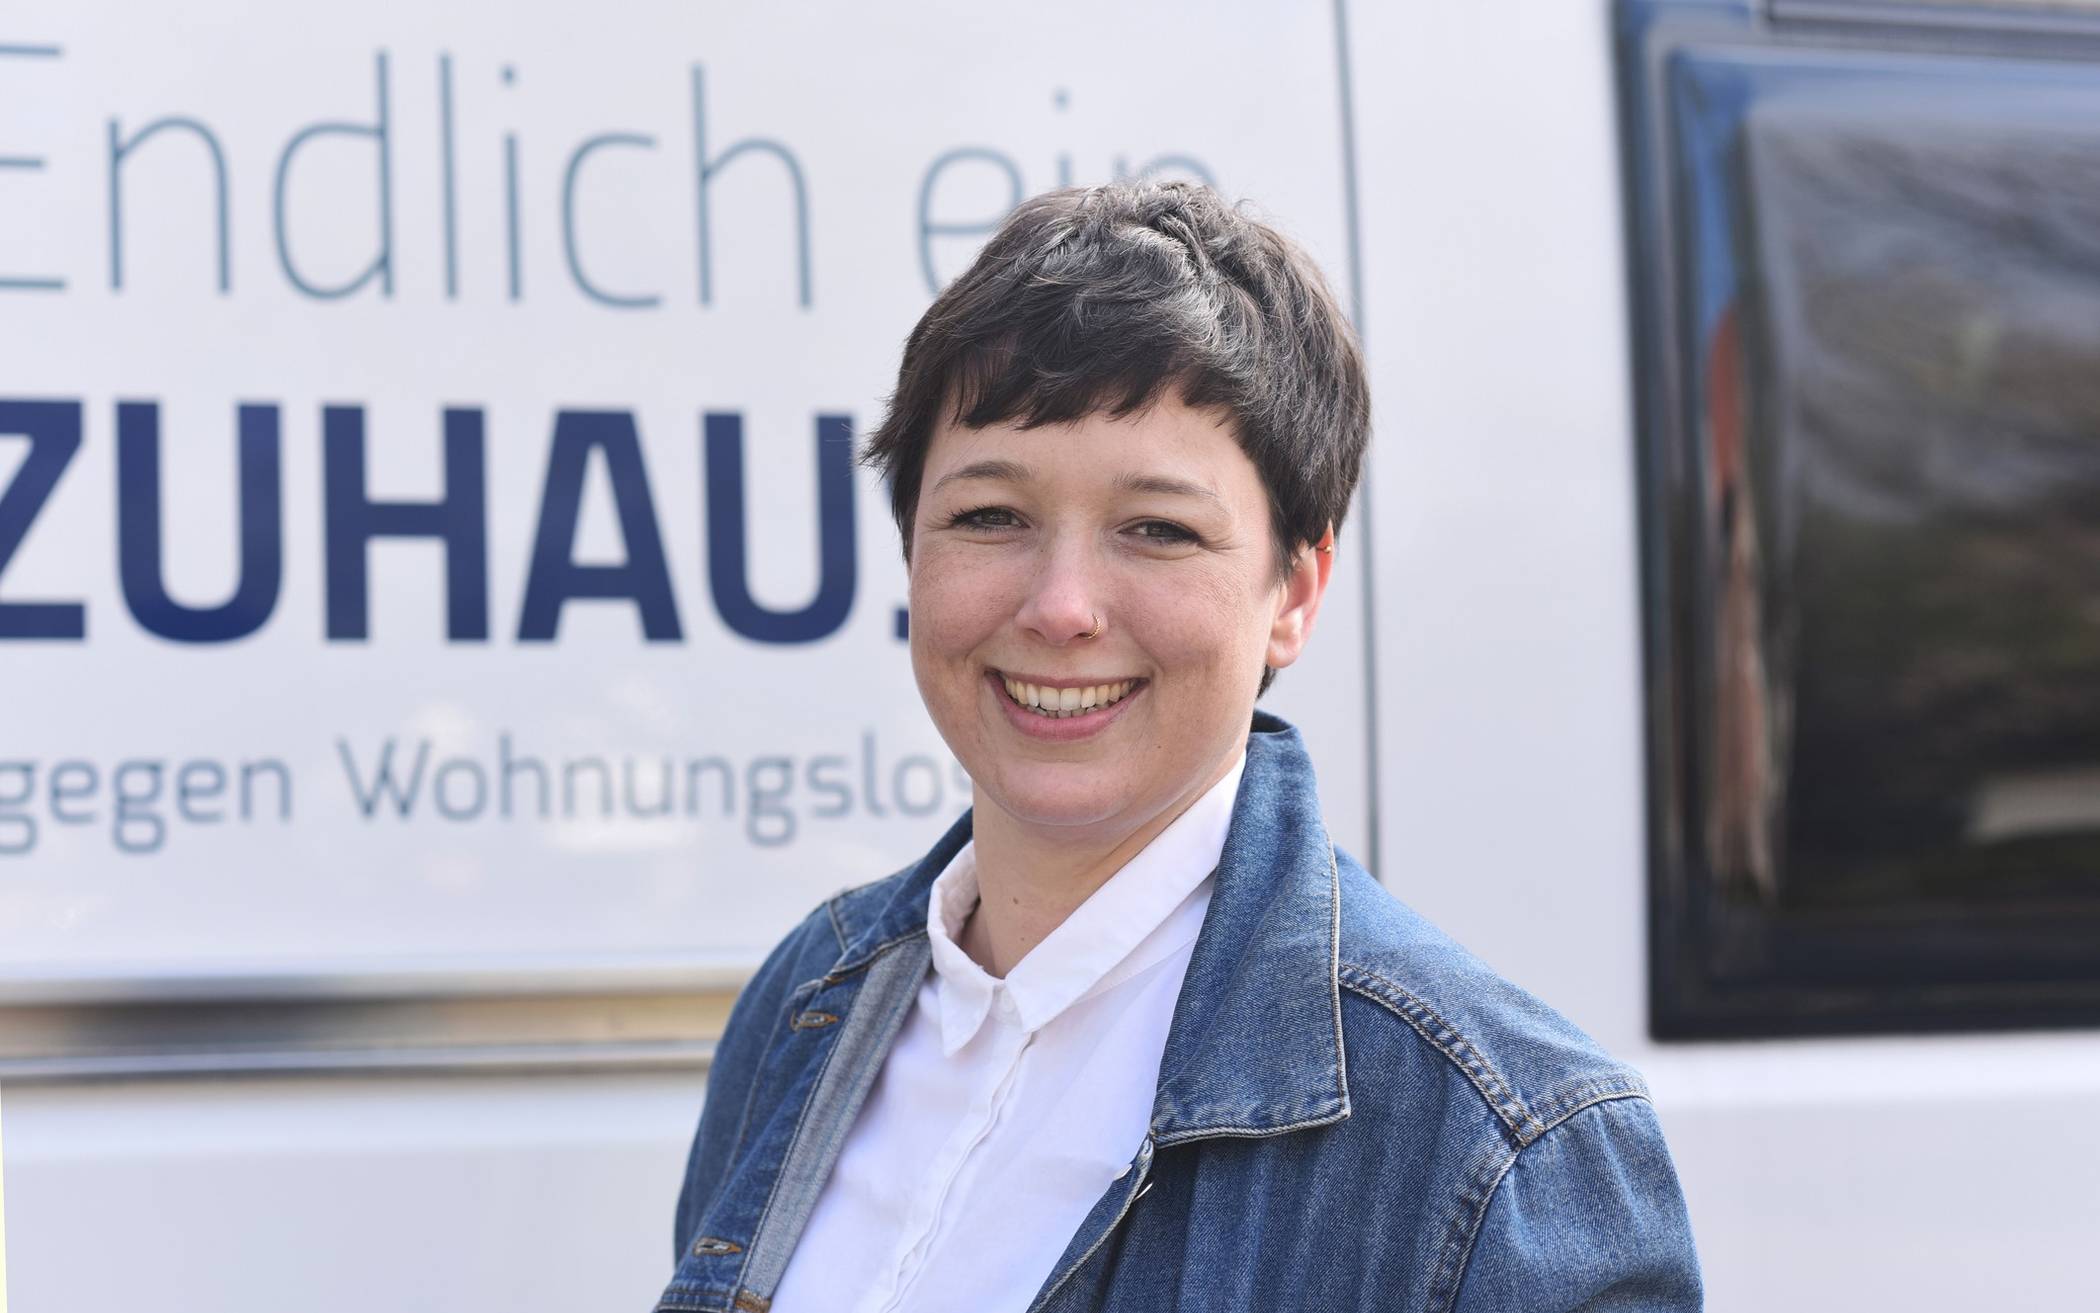  Kristina Teubler, kommissarische Fachbereichsleitung der Wohnungslosenhilfe der Caritas im Rhein-Kreis. 